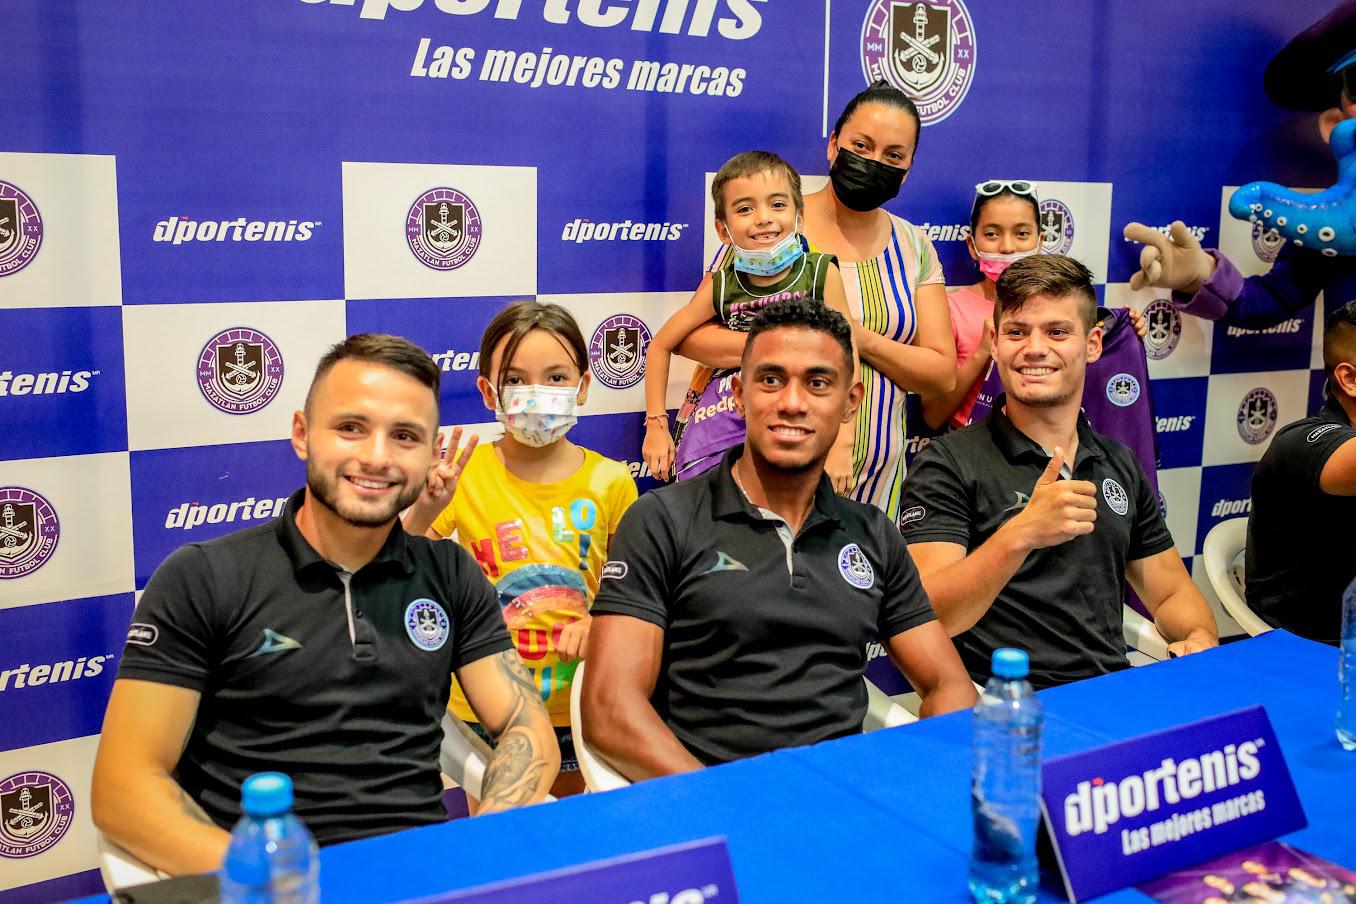 $!Mazatlán FC y D’portenis realizan firma de autógrafos y convivencia con aficionados